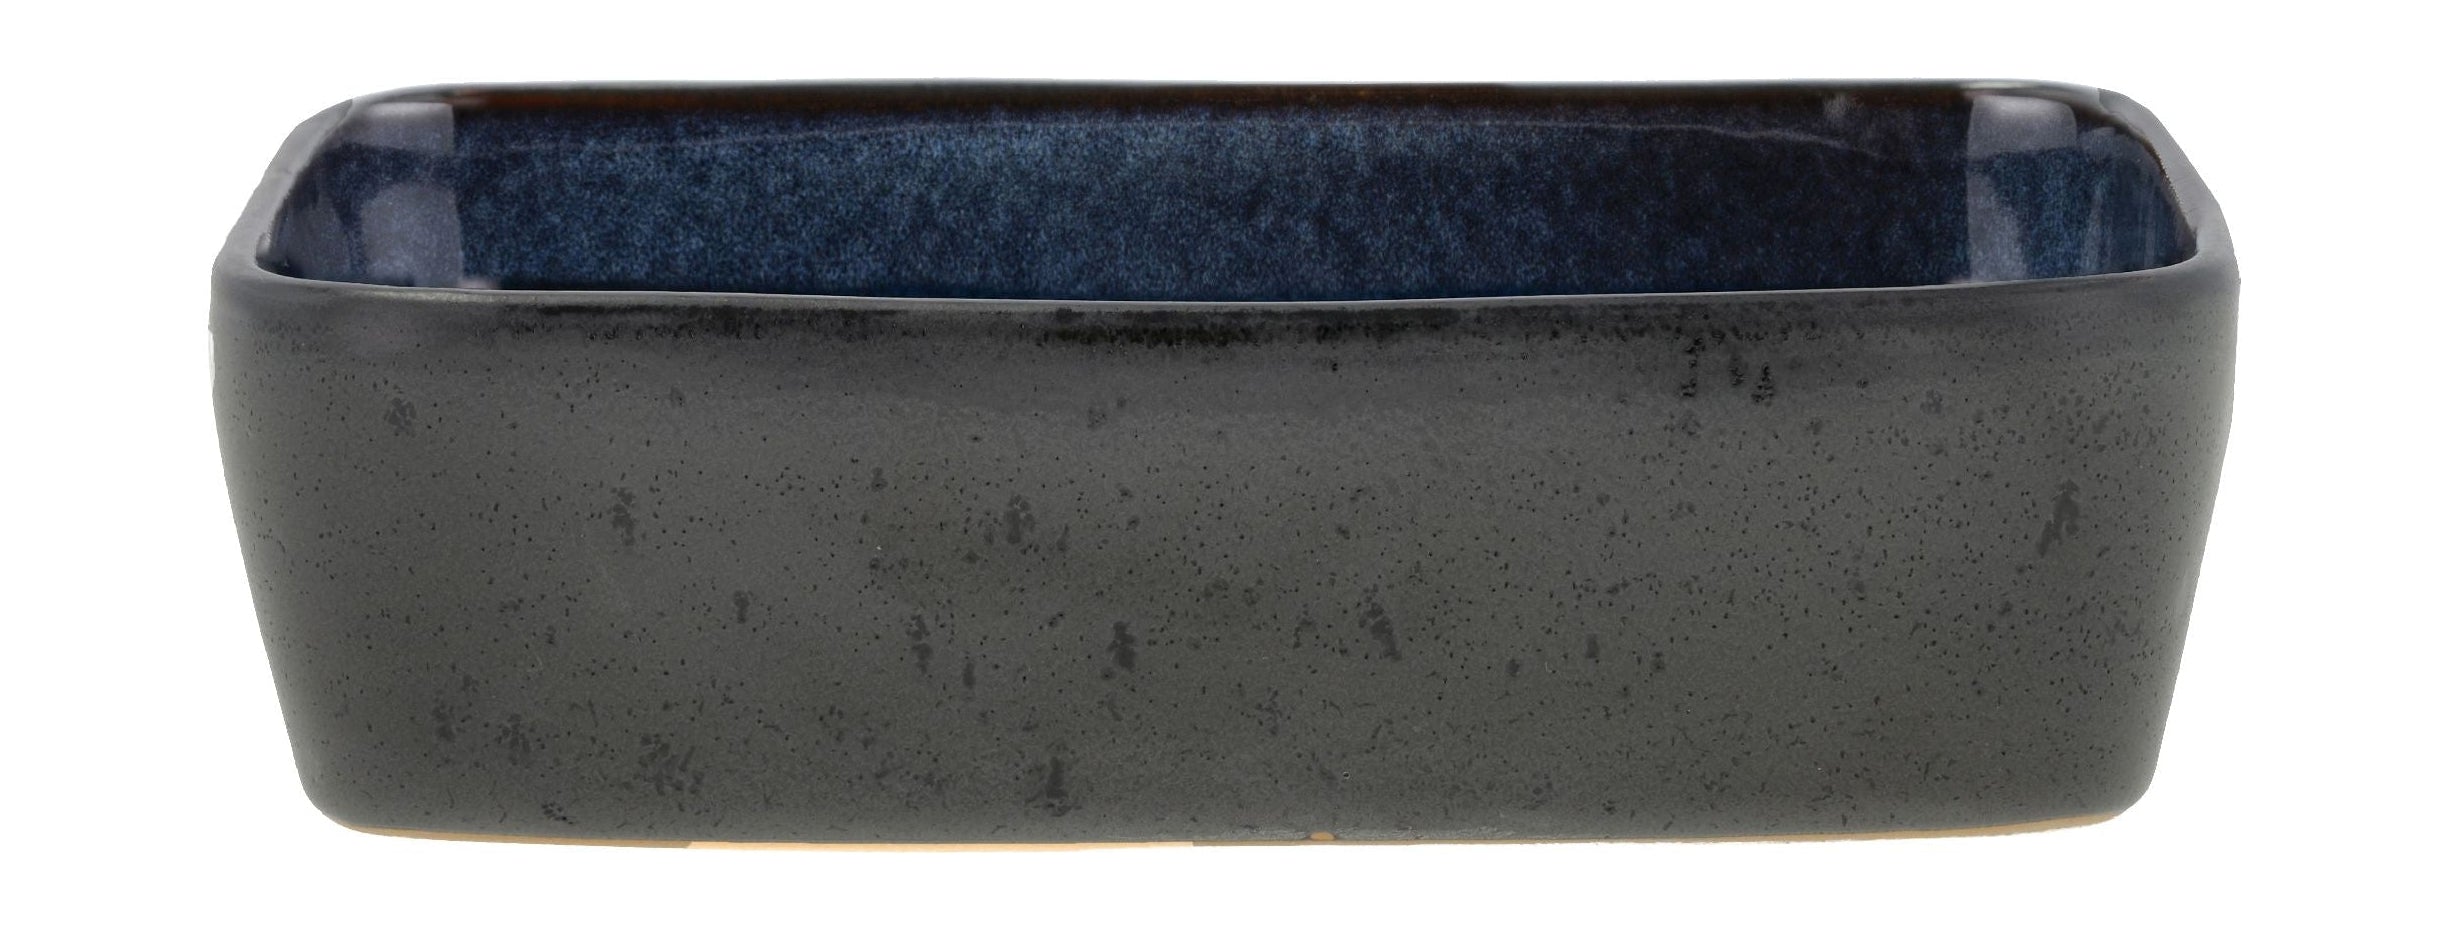 Bitz plato rectangular 19 x 14 x 5.3 cm, negro/azul